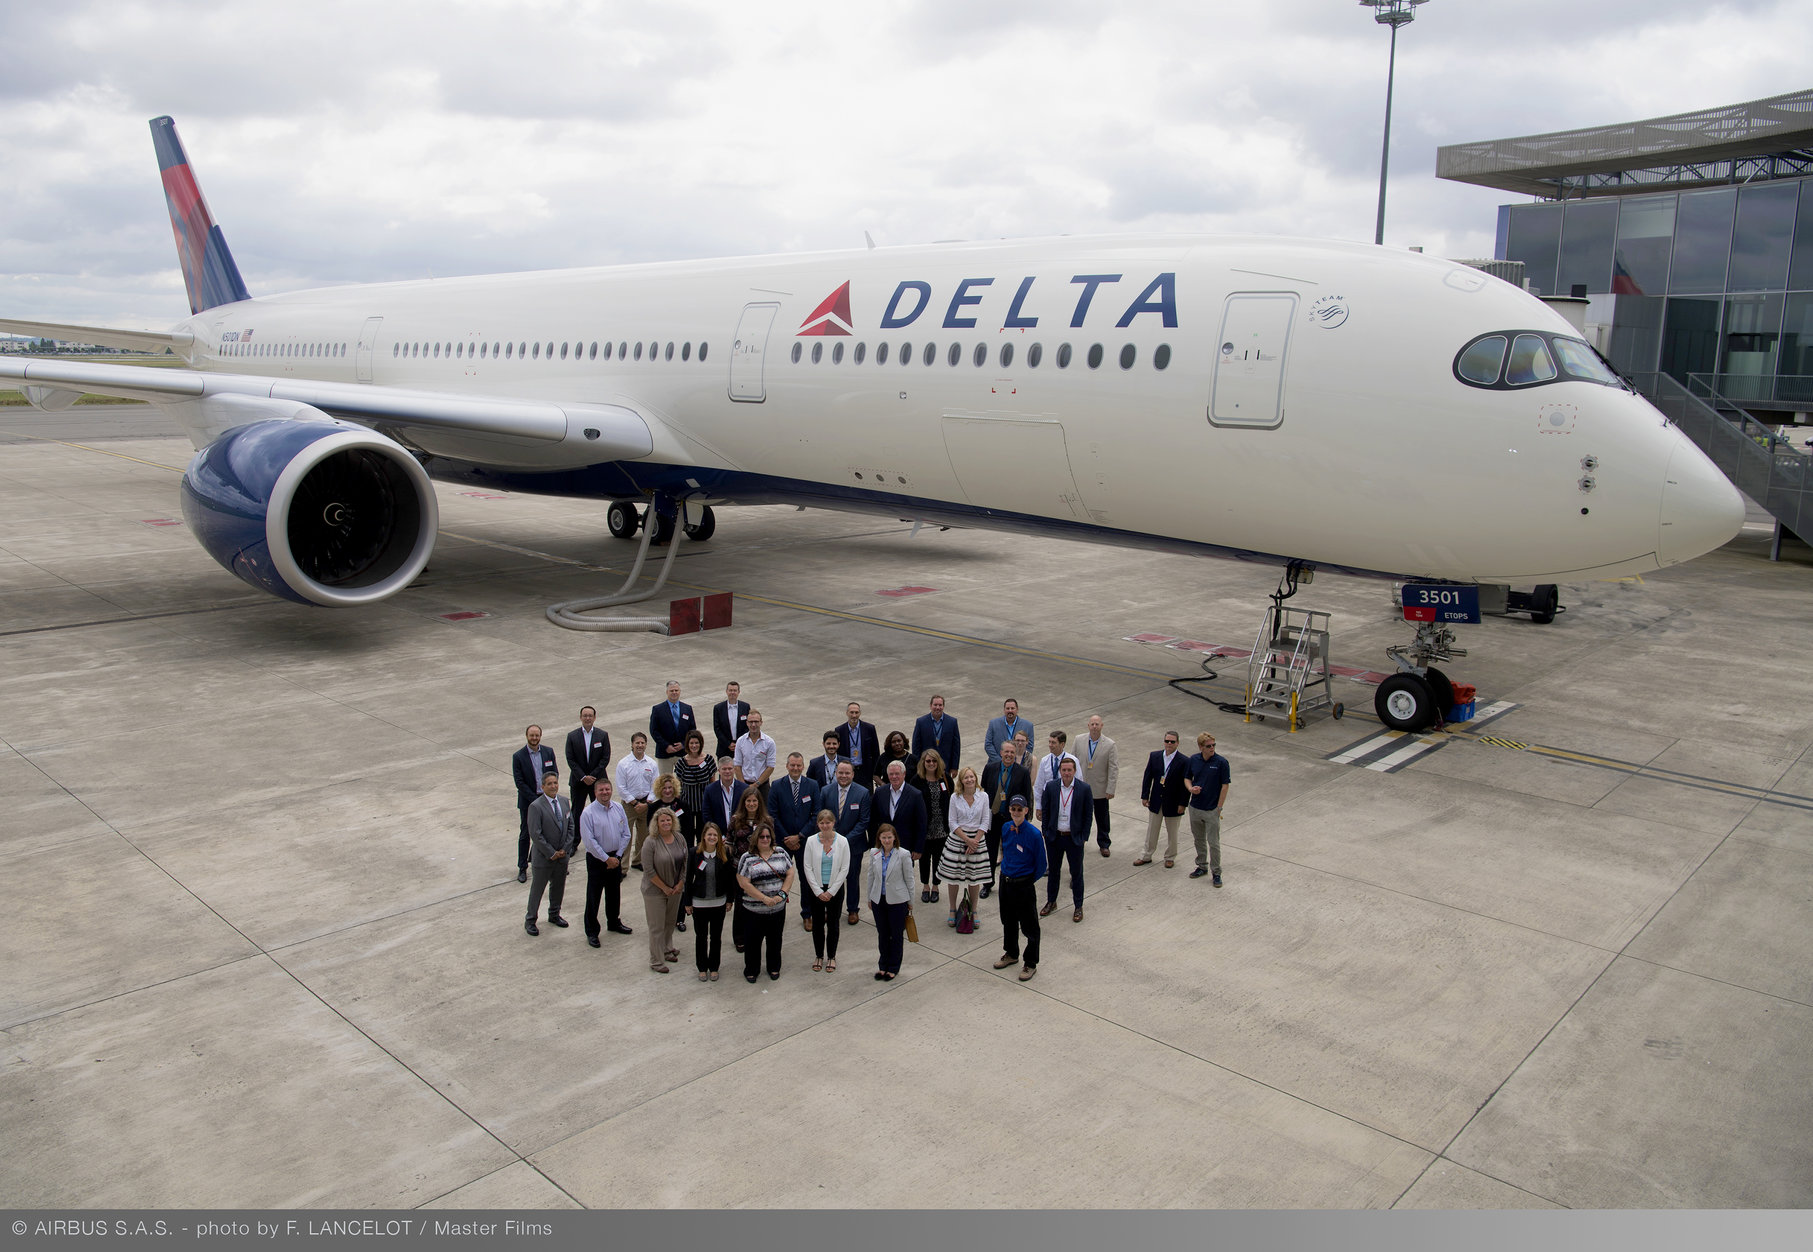 Delta reanuda vuelos a Argentina, Chile y Ecuador - Noticias de aviación, aeropuertos y aerolíneas - Forum Aircraft, Airports and Airlines